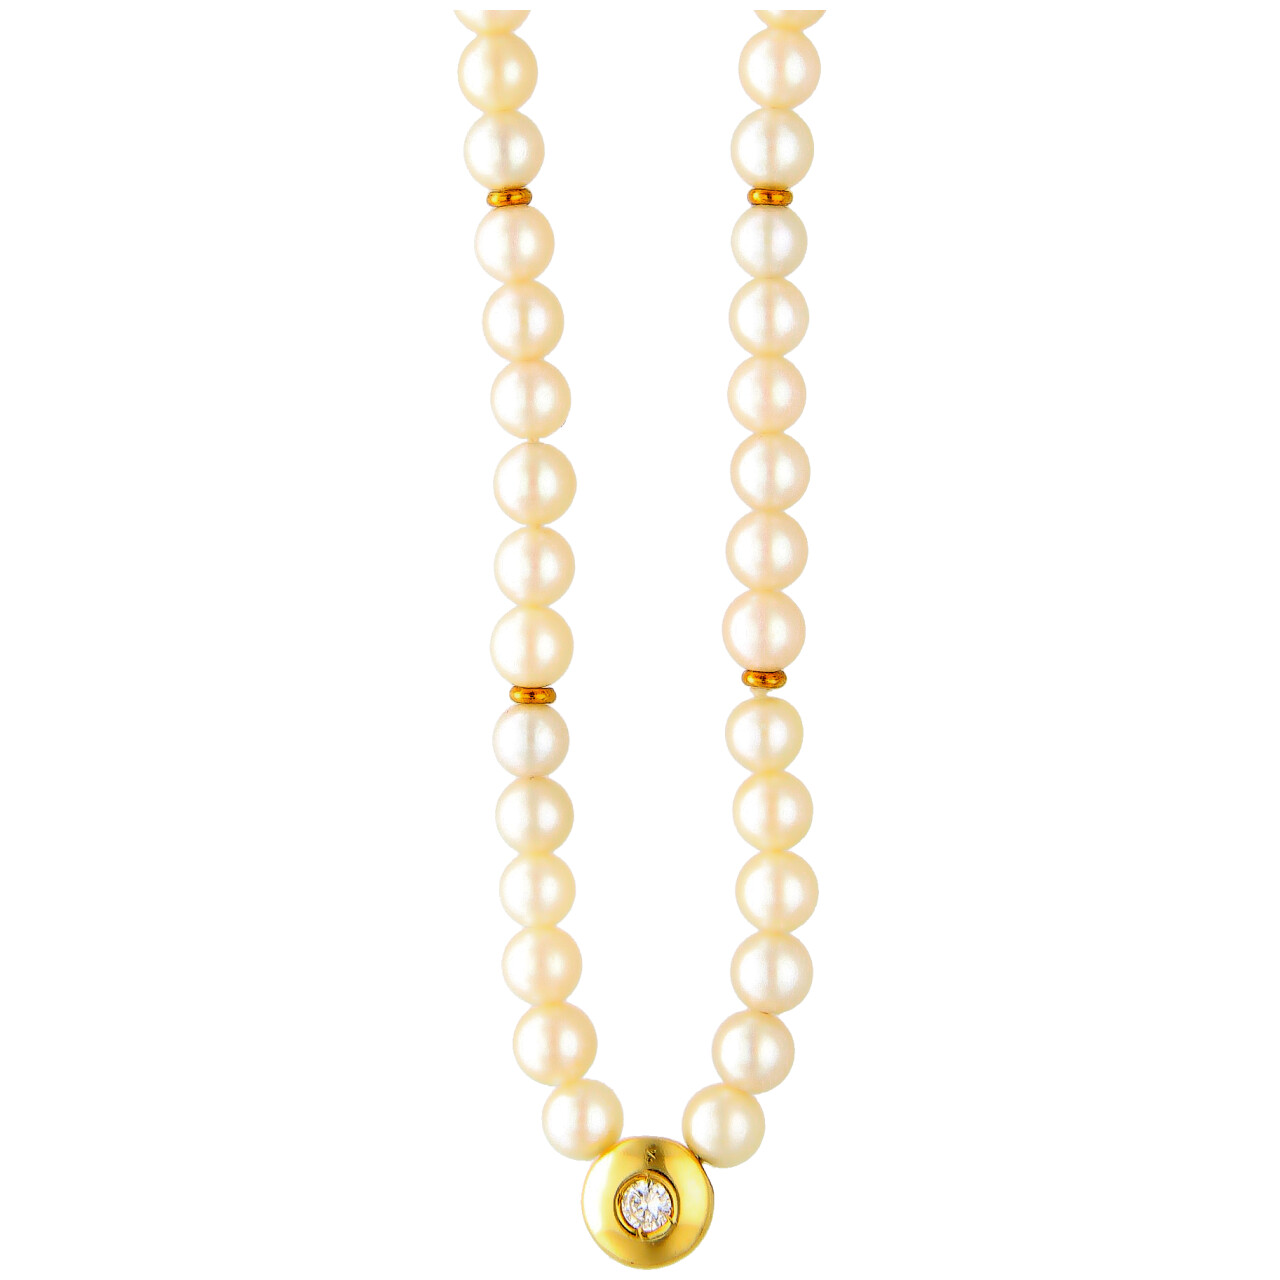 Collier di Perle in oro giallo con Diamante 0,10 ct Color G Purezza VSI